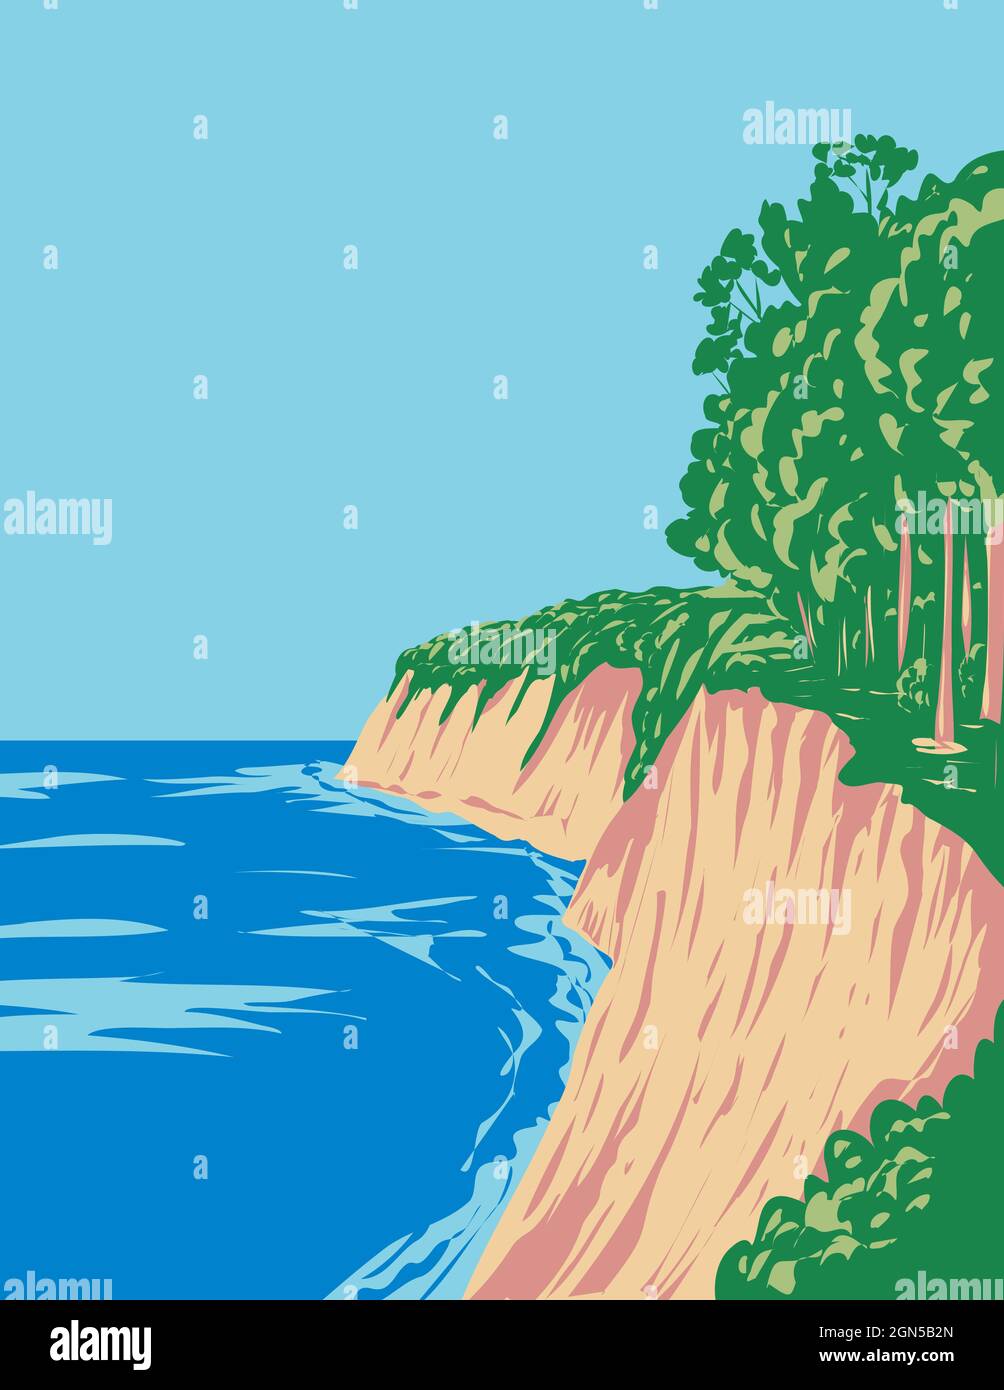 Parc national de Jasmund avec falaises de craie sur la péninsule de Jasmund en Allemagne, affiche art déco WPA Banque D'Images